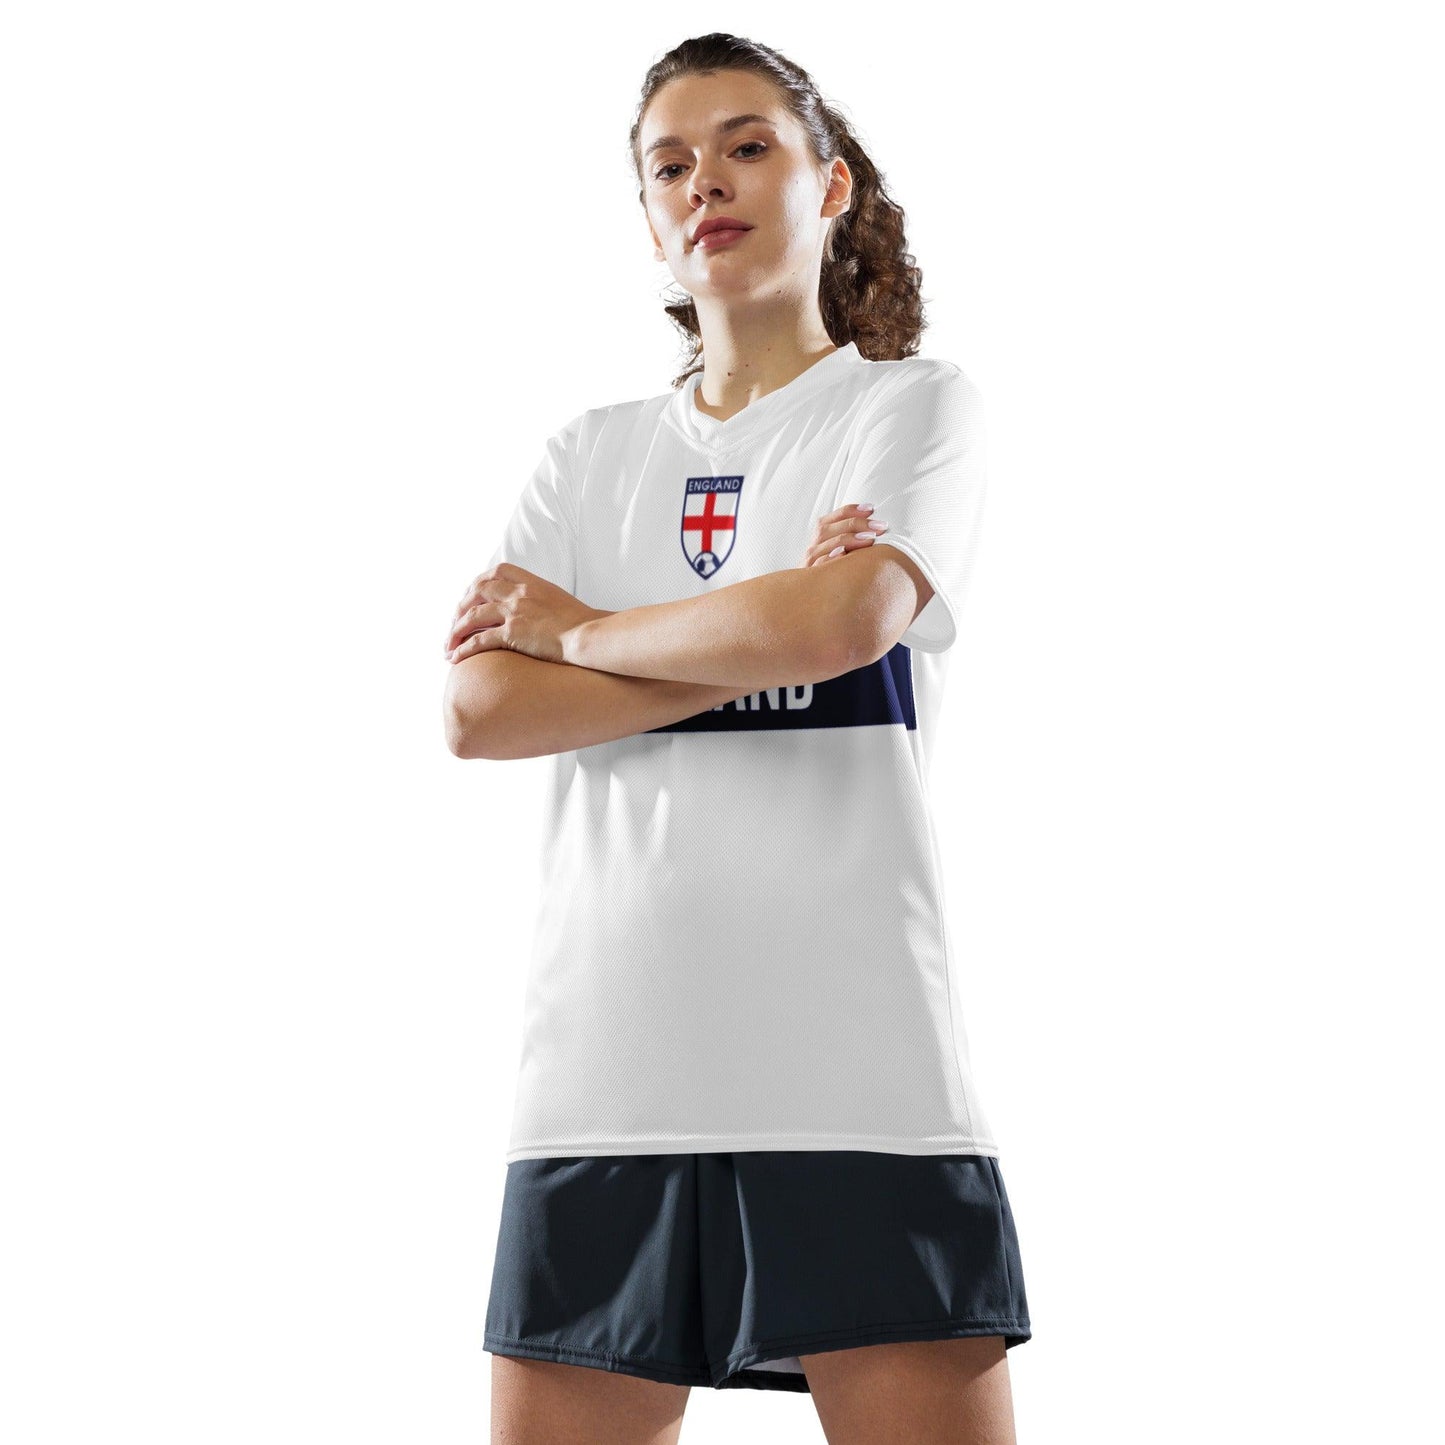 Wit Engeland Voetbalshirt met Blauwe balk - EK 2024 uitvoering